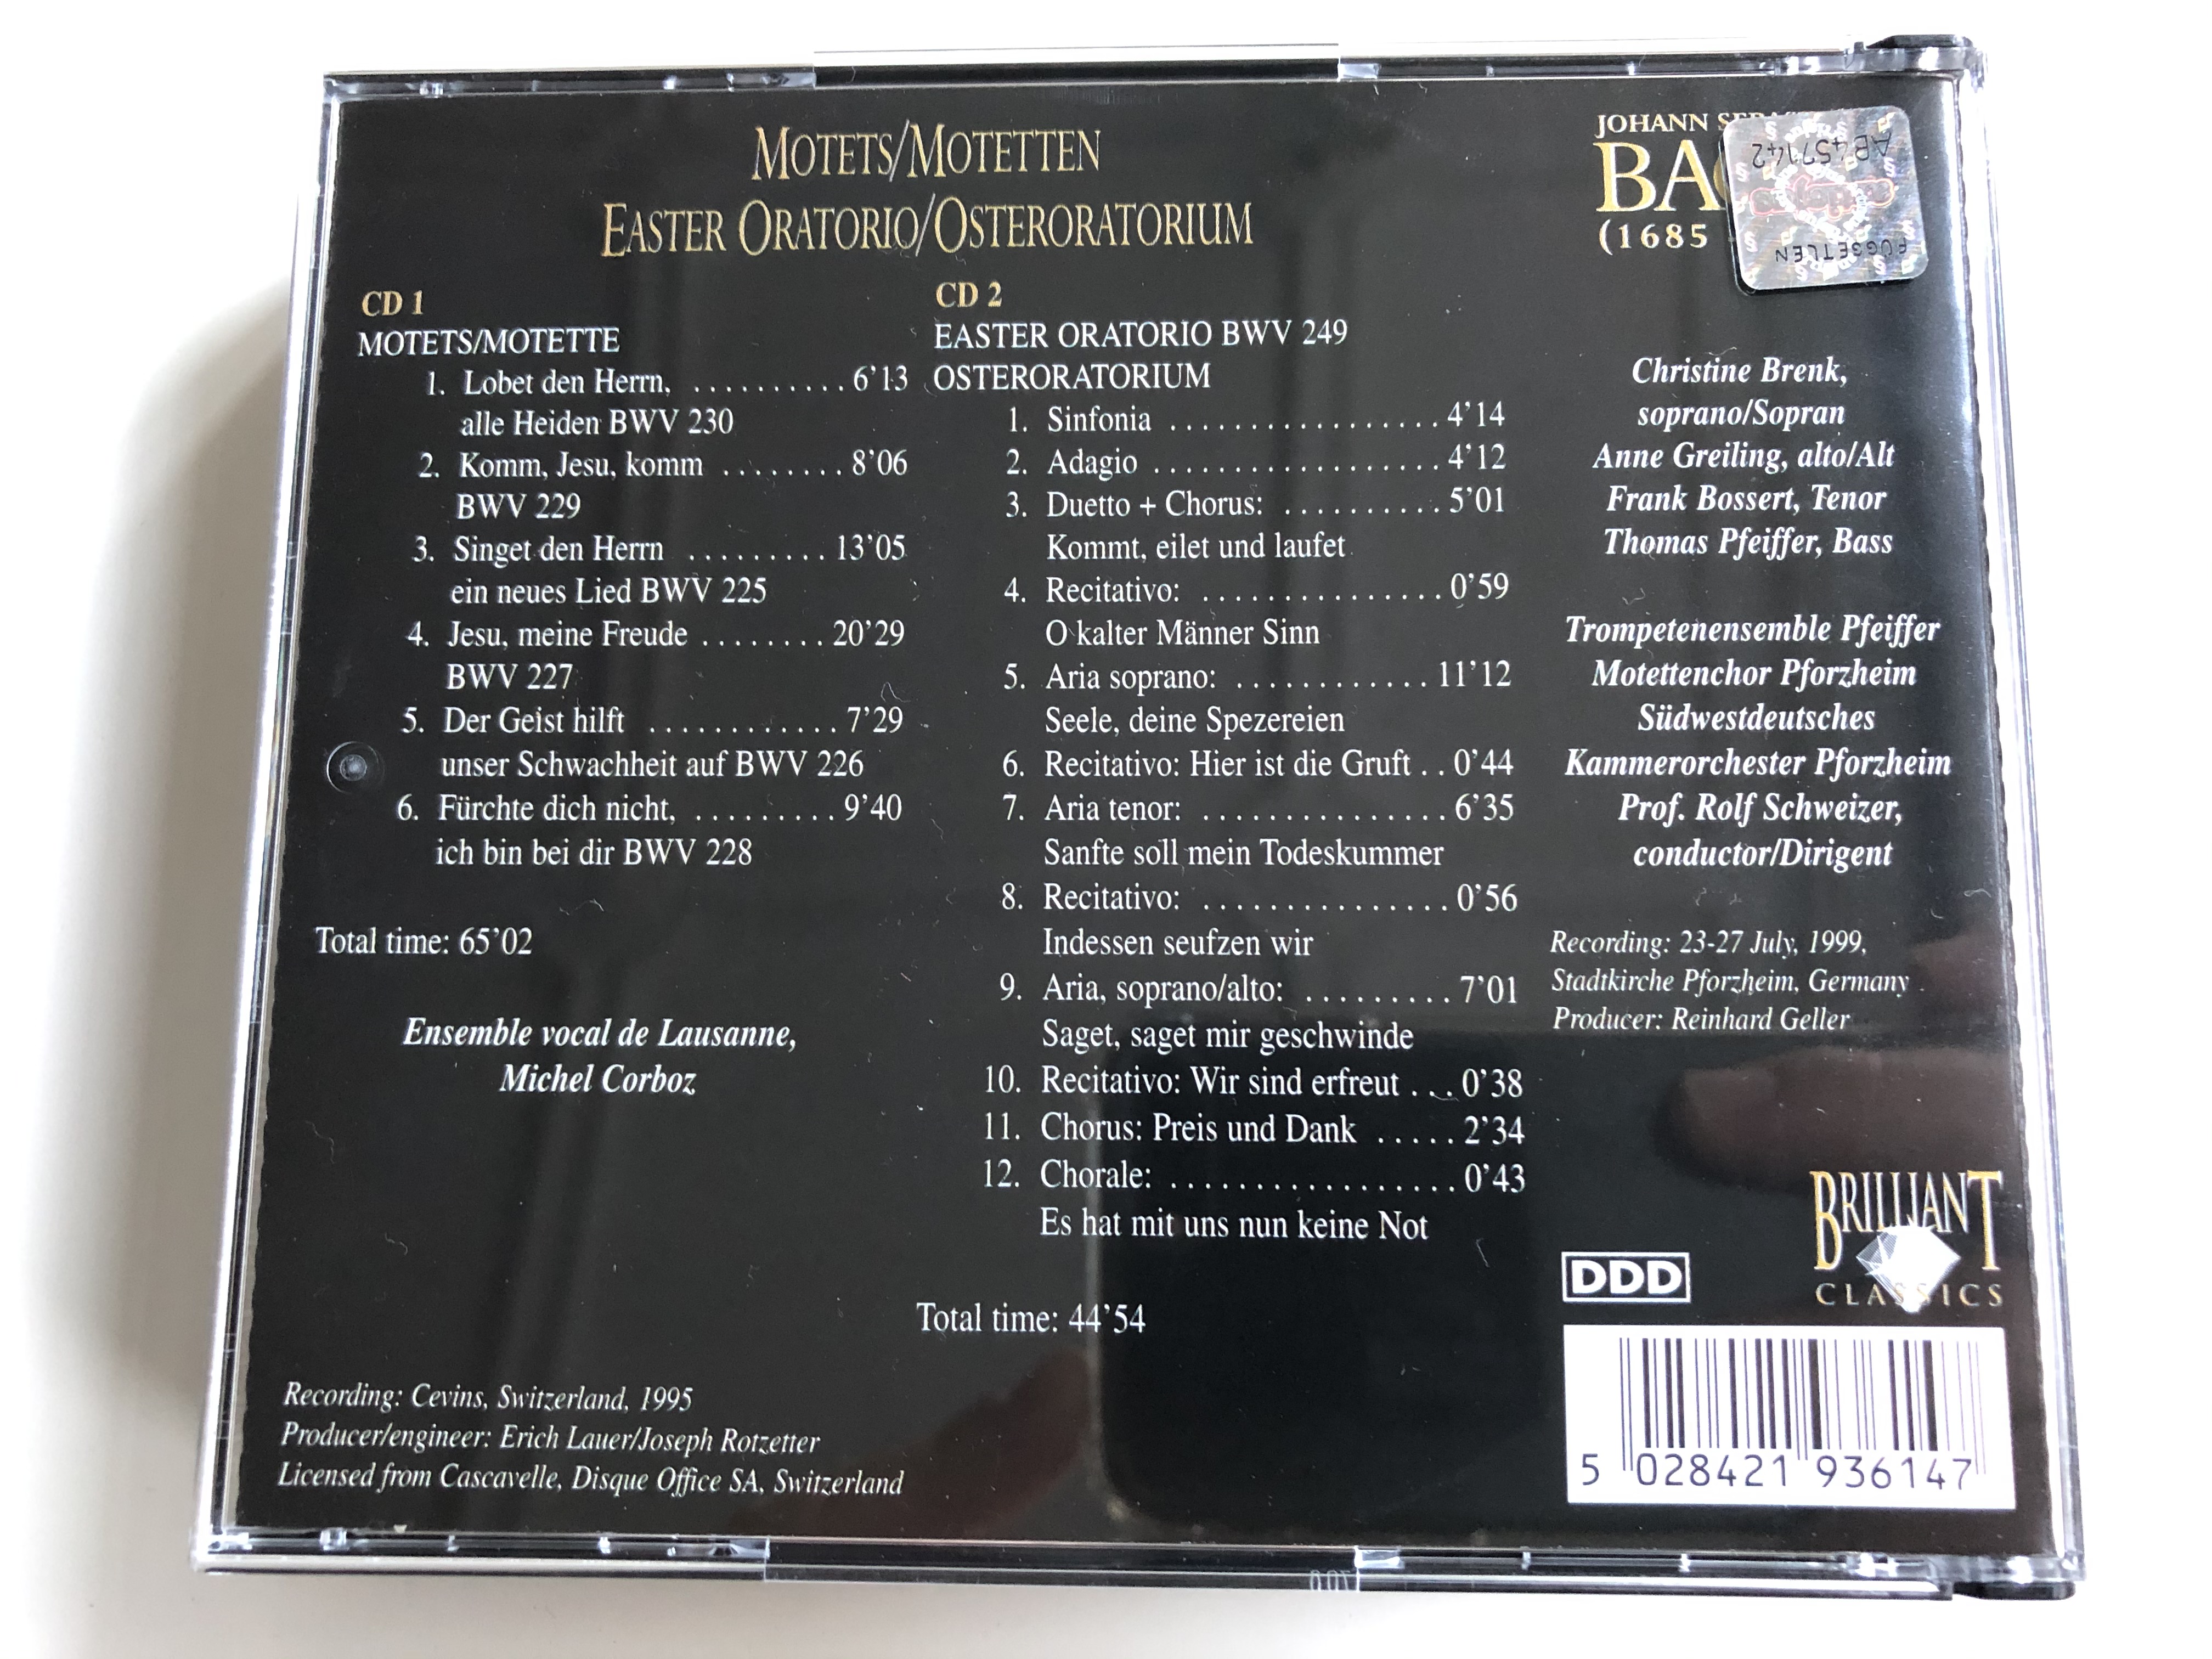 bach-edition-motets-motetten-easter-oratorio-osteroratorium-brilliant-classics-2x-audio-cd-1999-993617-993618-4-.jpg